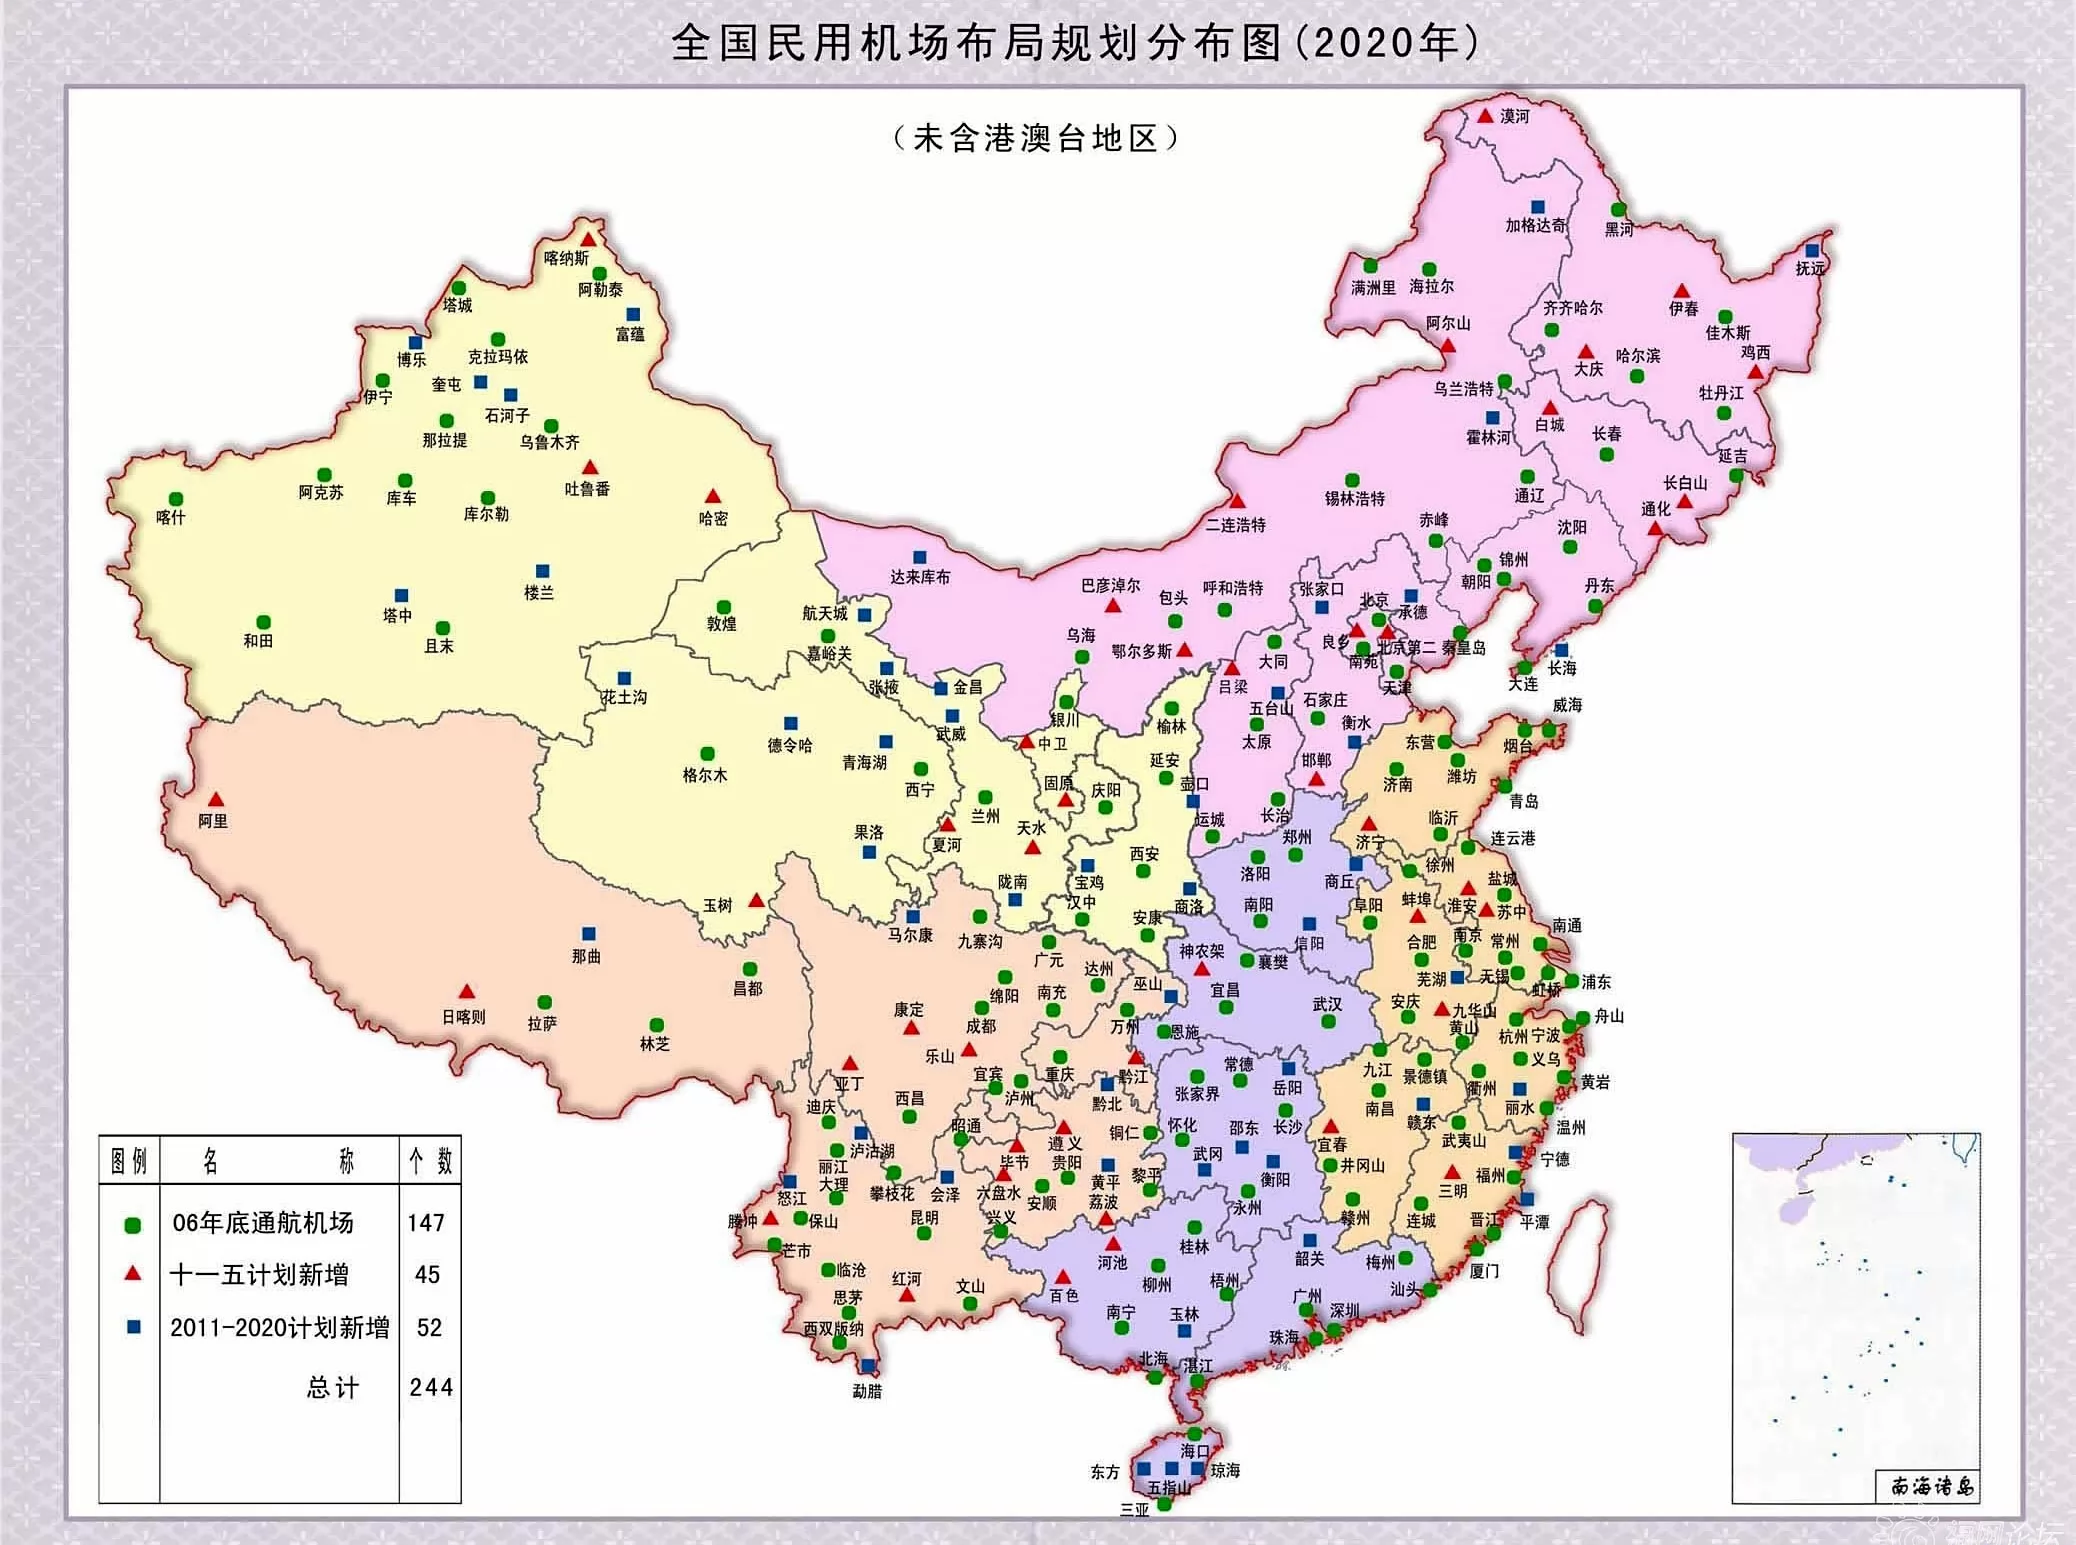 全国民用机场分布规划图 - 中国交通地图 - 地理教师网